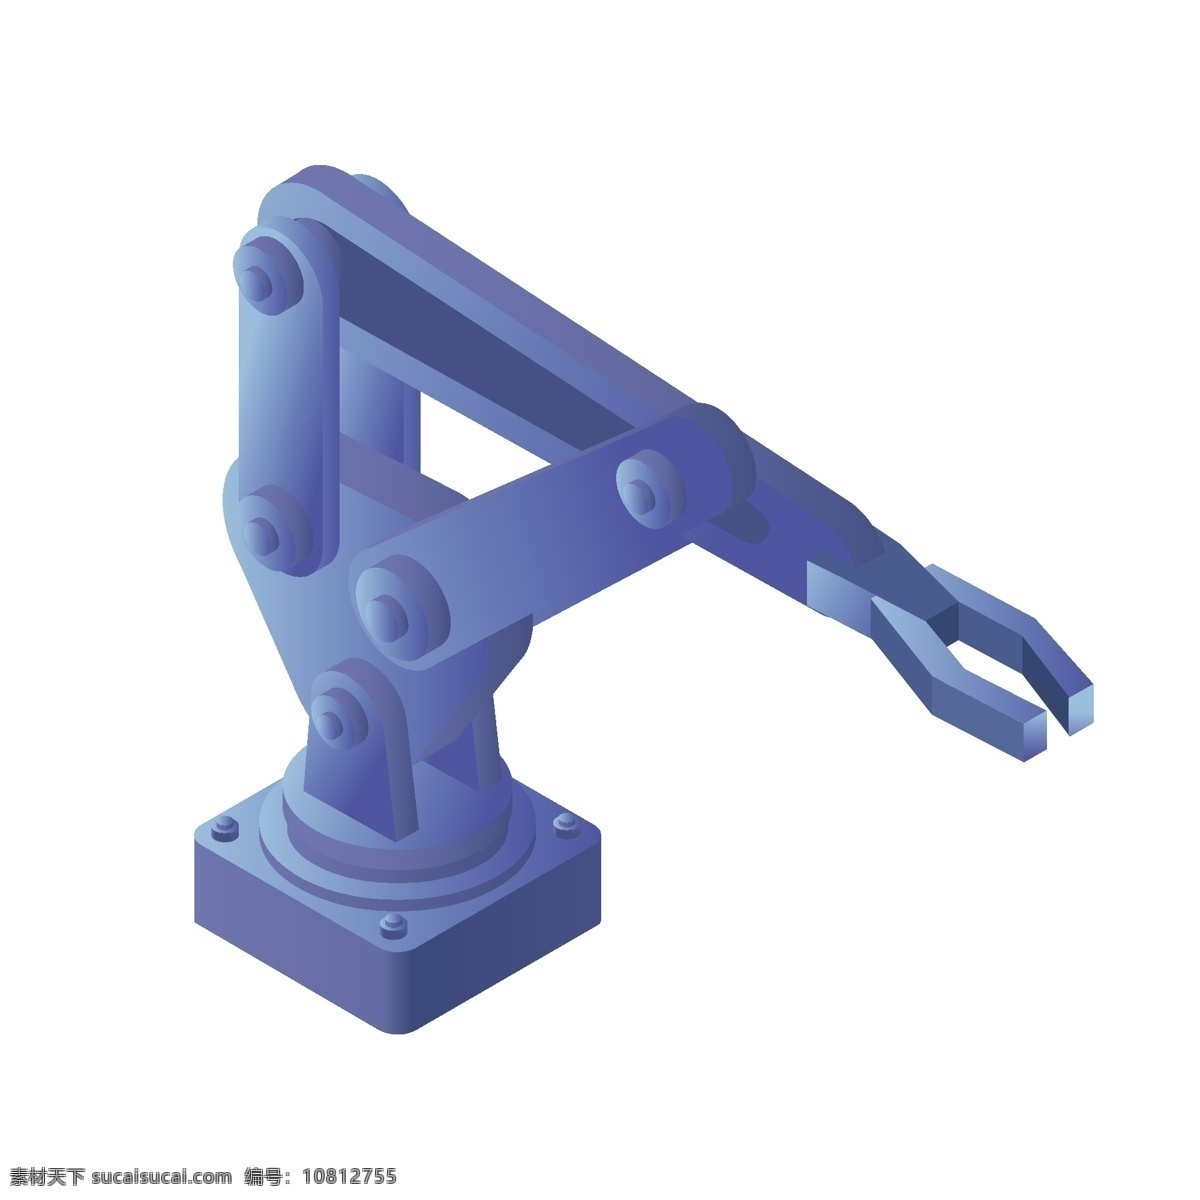 蓝色 科技 杠杆 机械 手臂 商用 元素 运动 工业 爪子 钳子